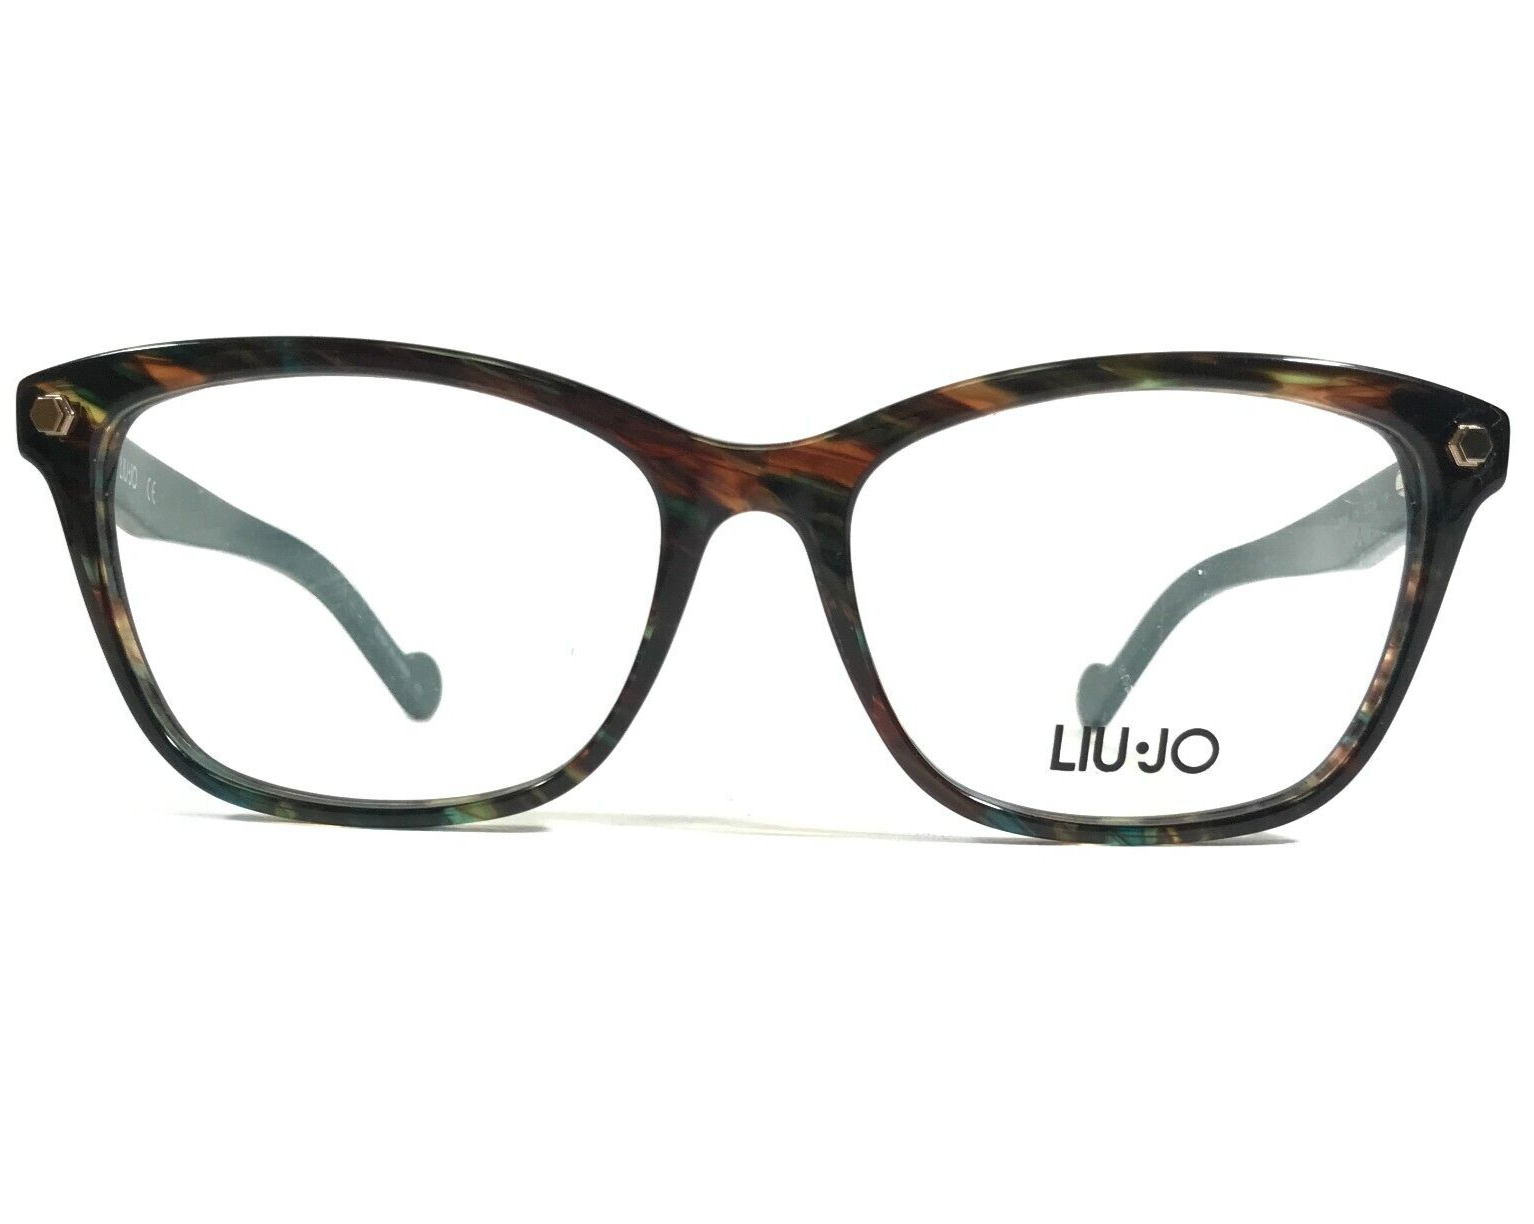 Primary image for Liu Jo Eyeglasses Frames LJ2616 316 Green Tortoise Square Full Rim 52-16-135